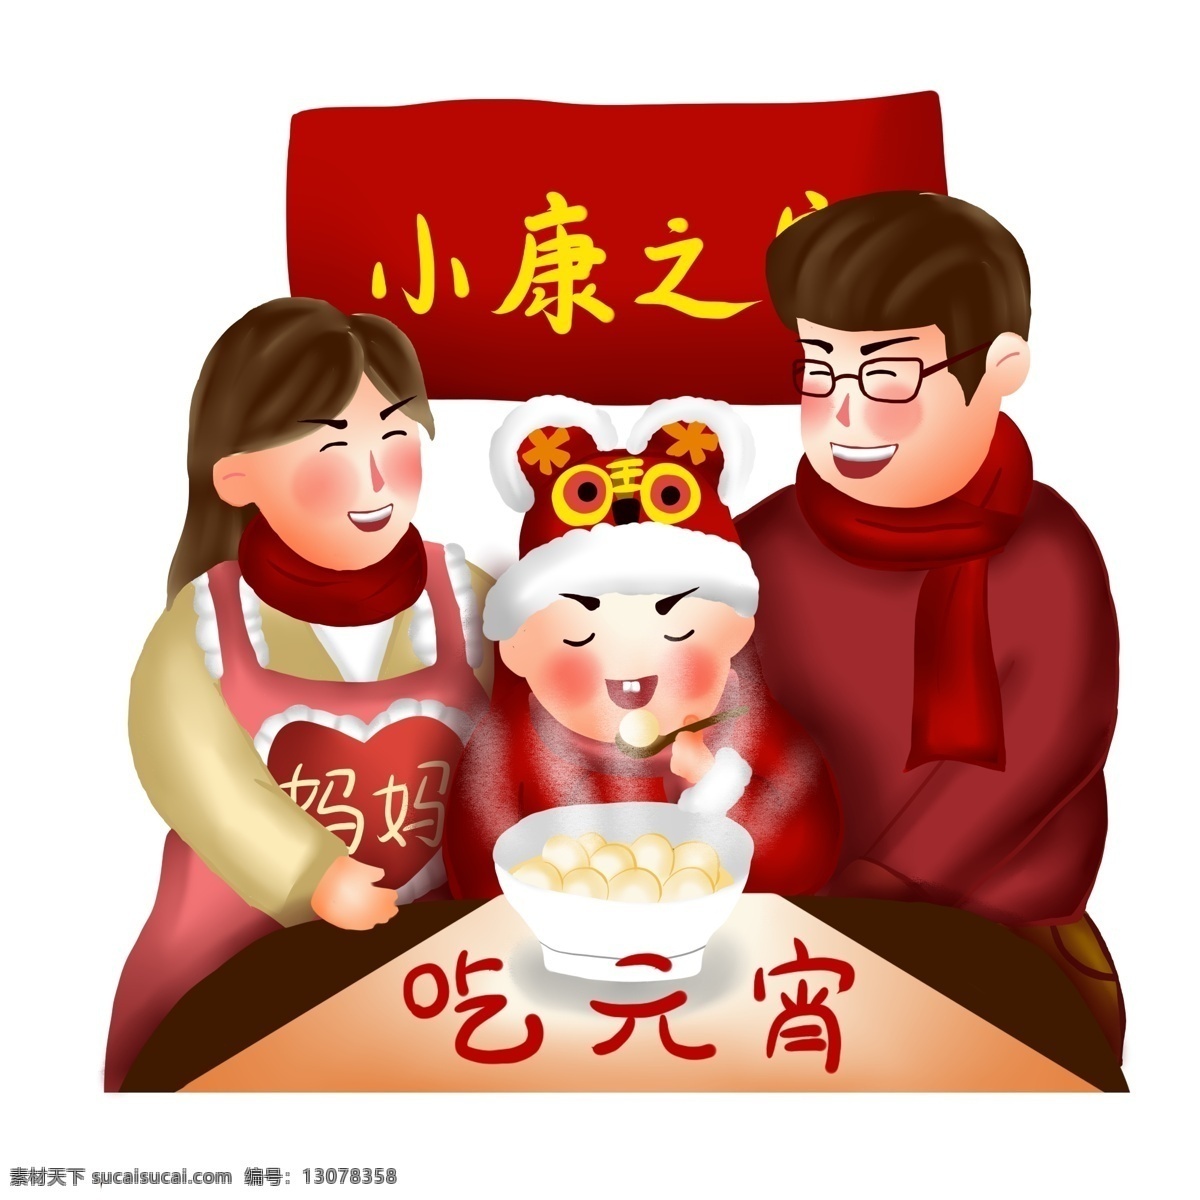 小康之家 吃 元宵 喜庆 卡通 手绘 汤圆 幸福 新年 吃汤圆 一家三口 新春 吃元宵